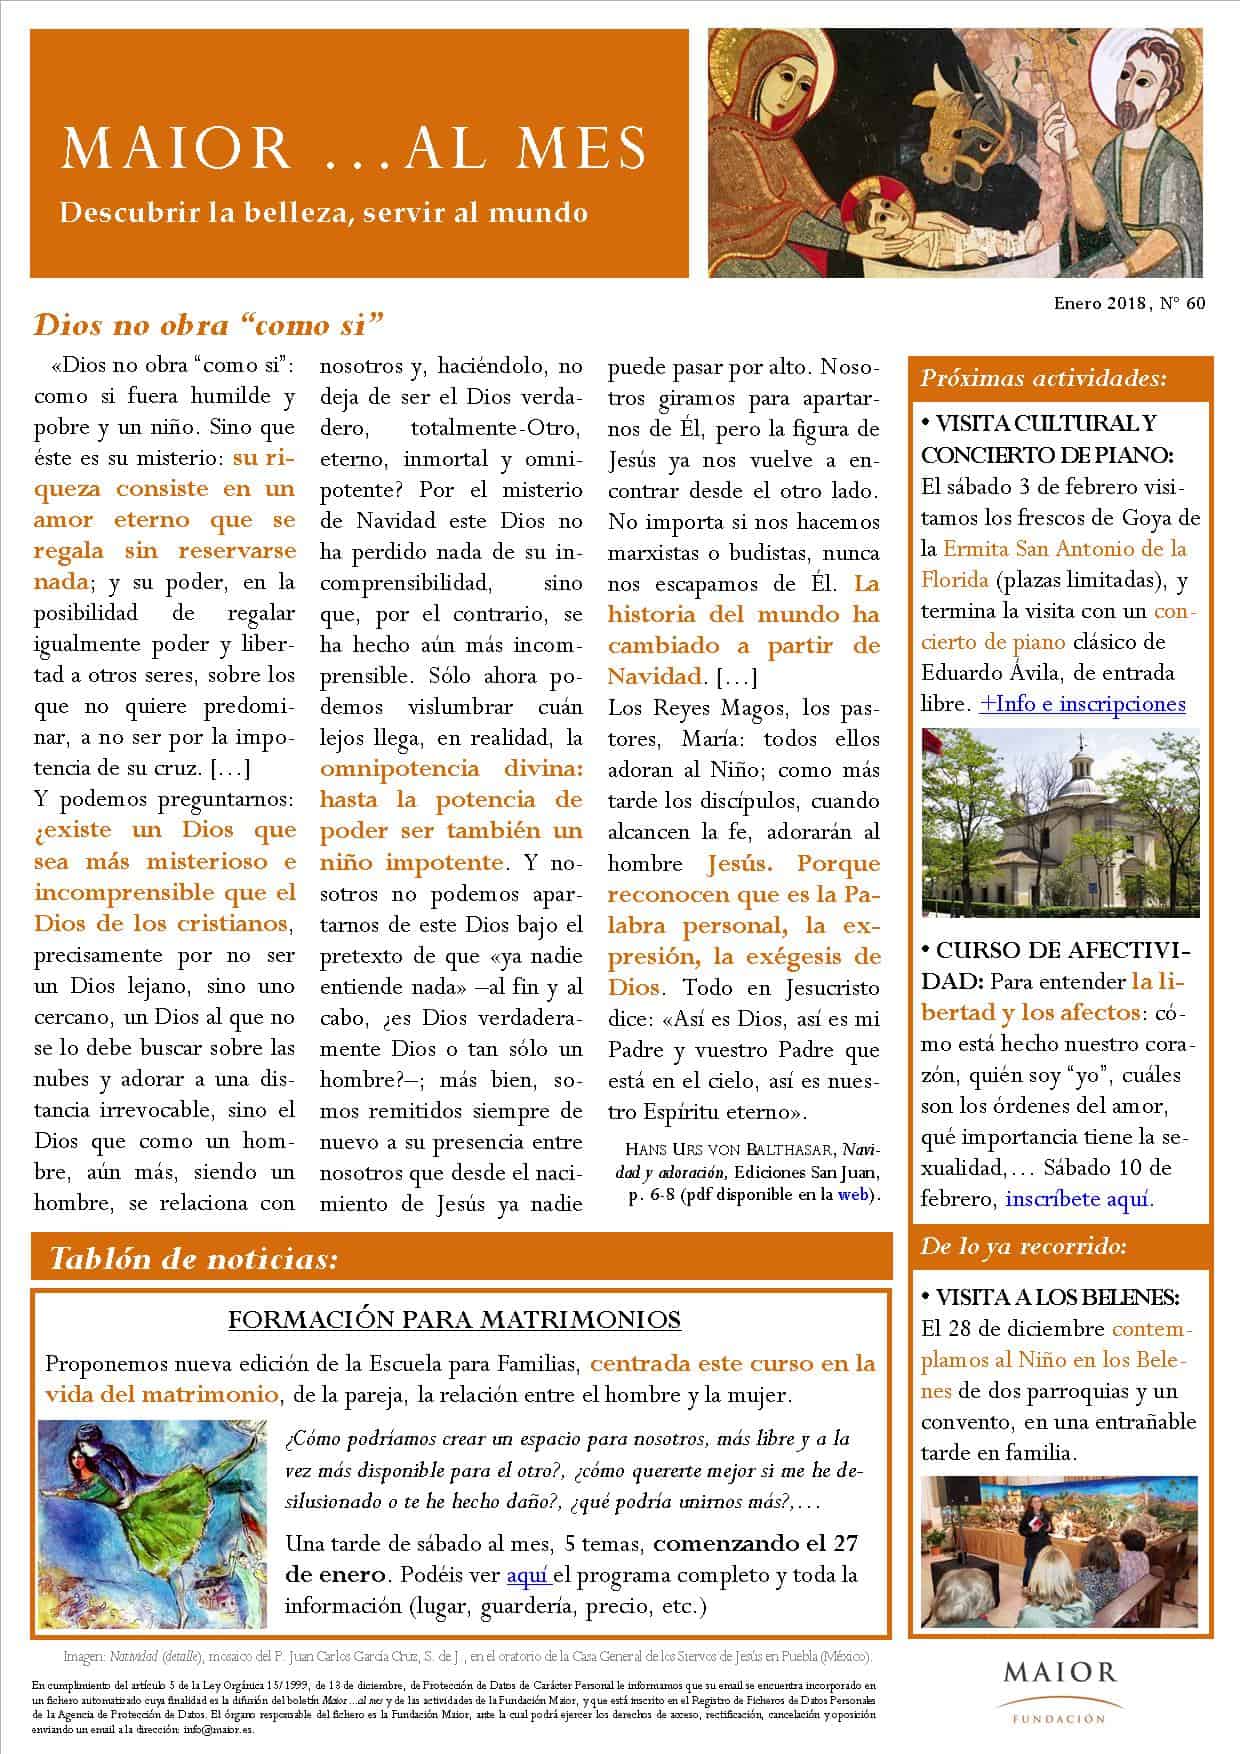 Boletín mensual de noticias y actividades de la Fundación Maior. Edición de enero 2018